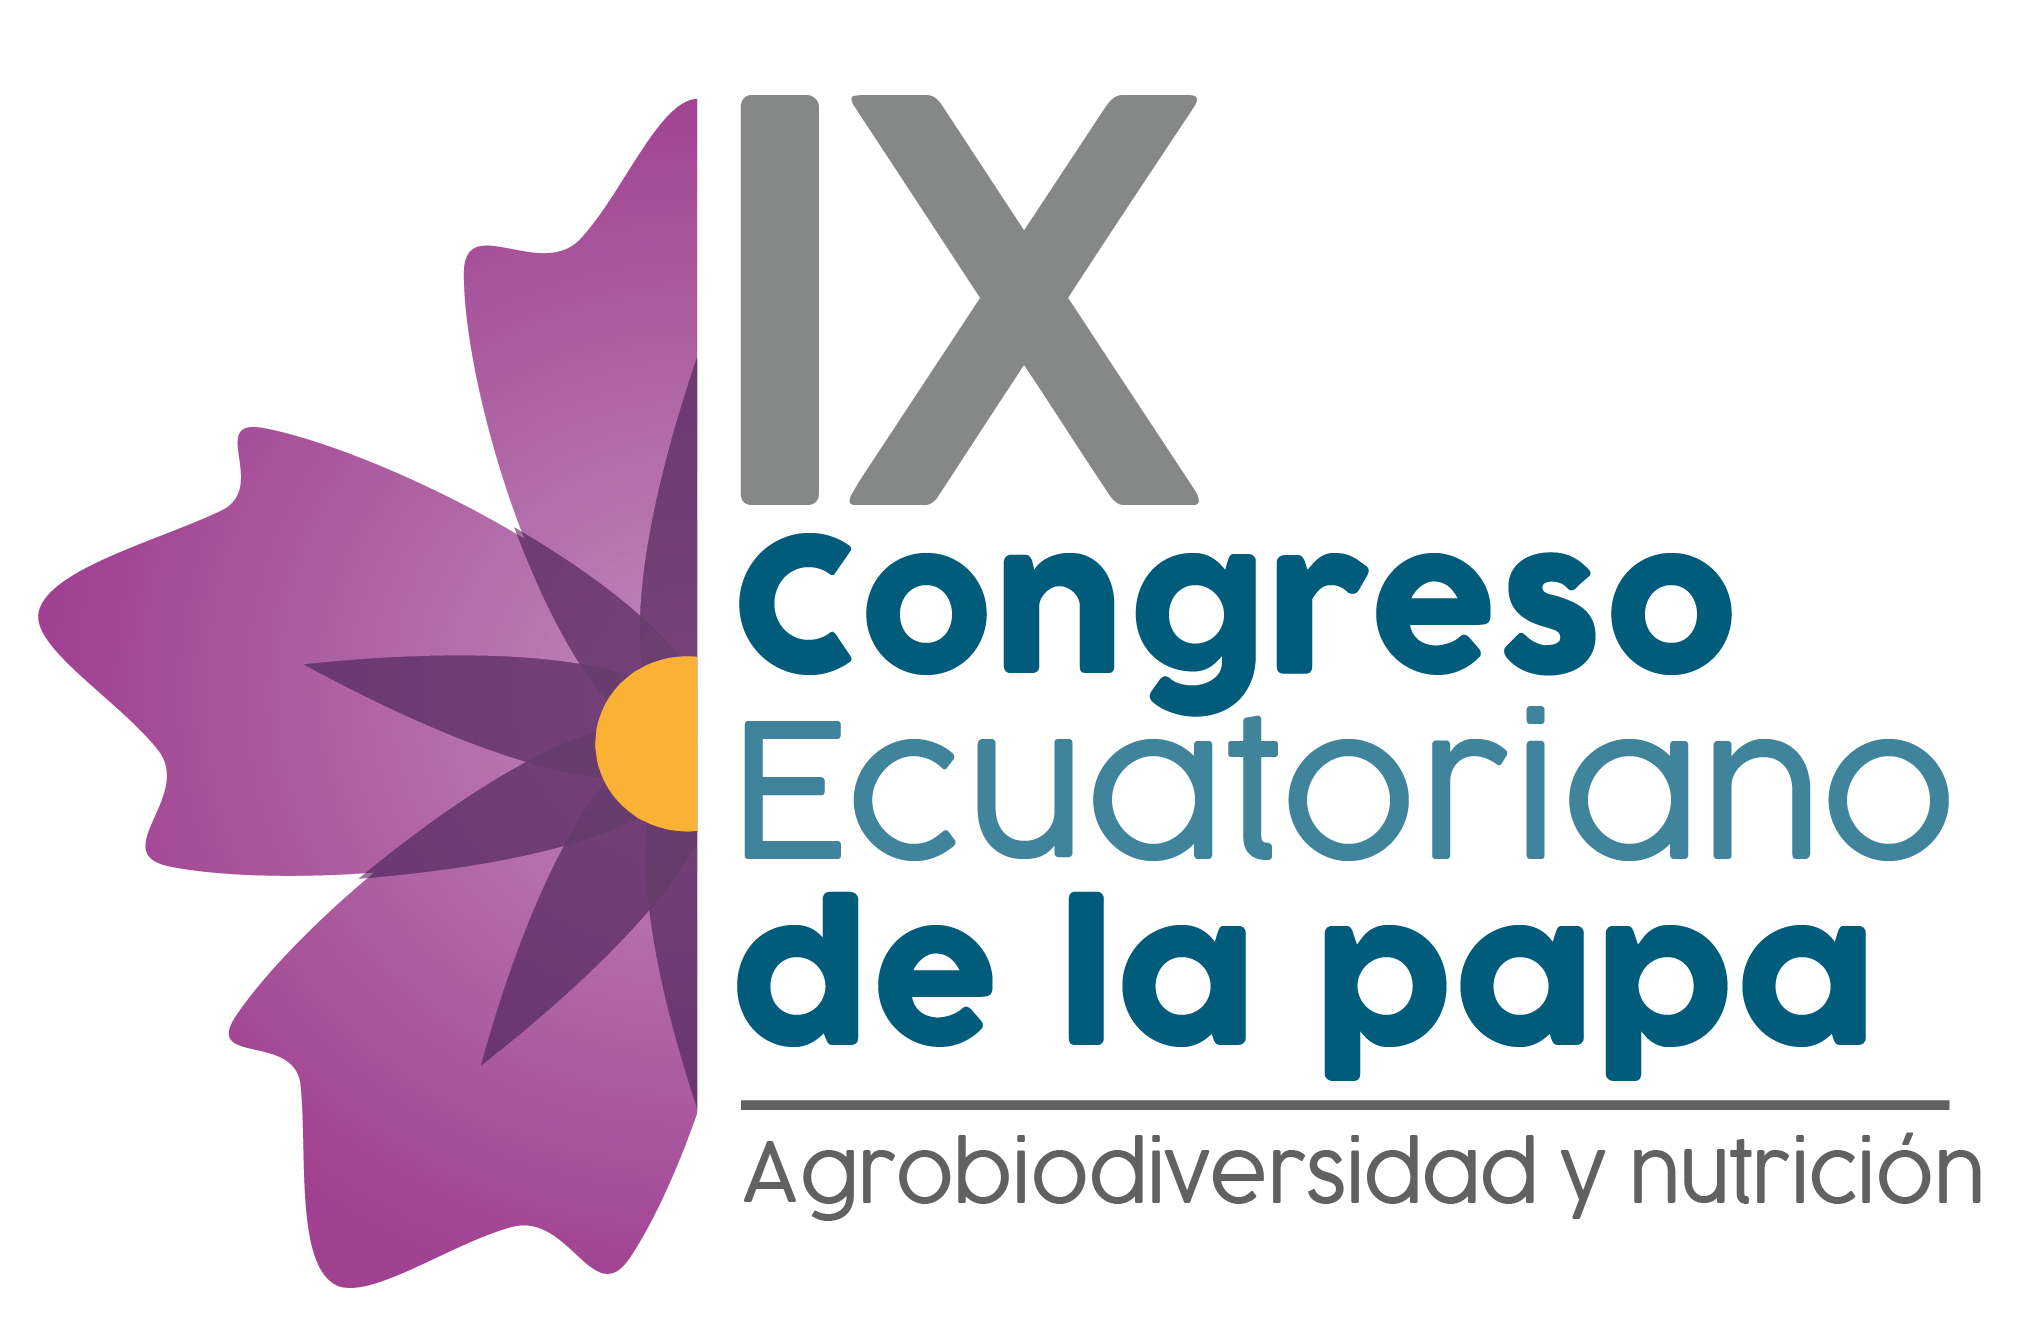 El IX Congreso Ecuatoriano de la Papa